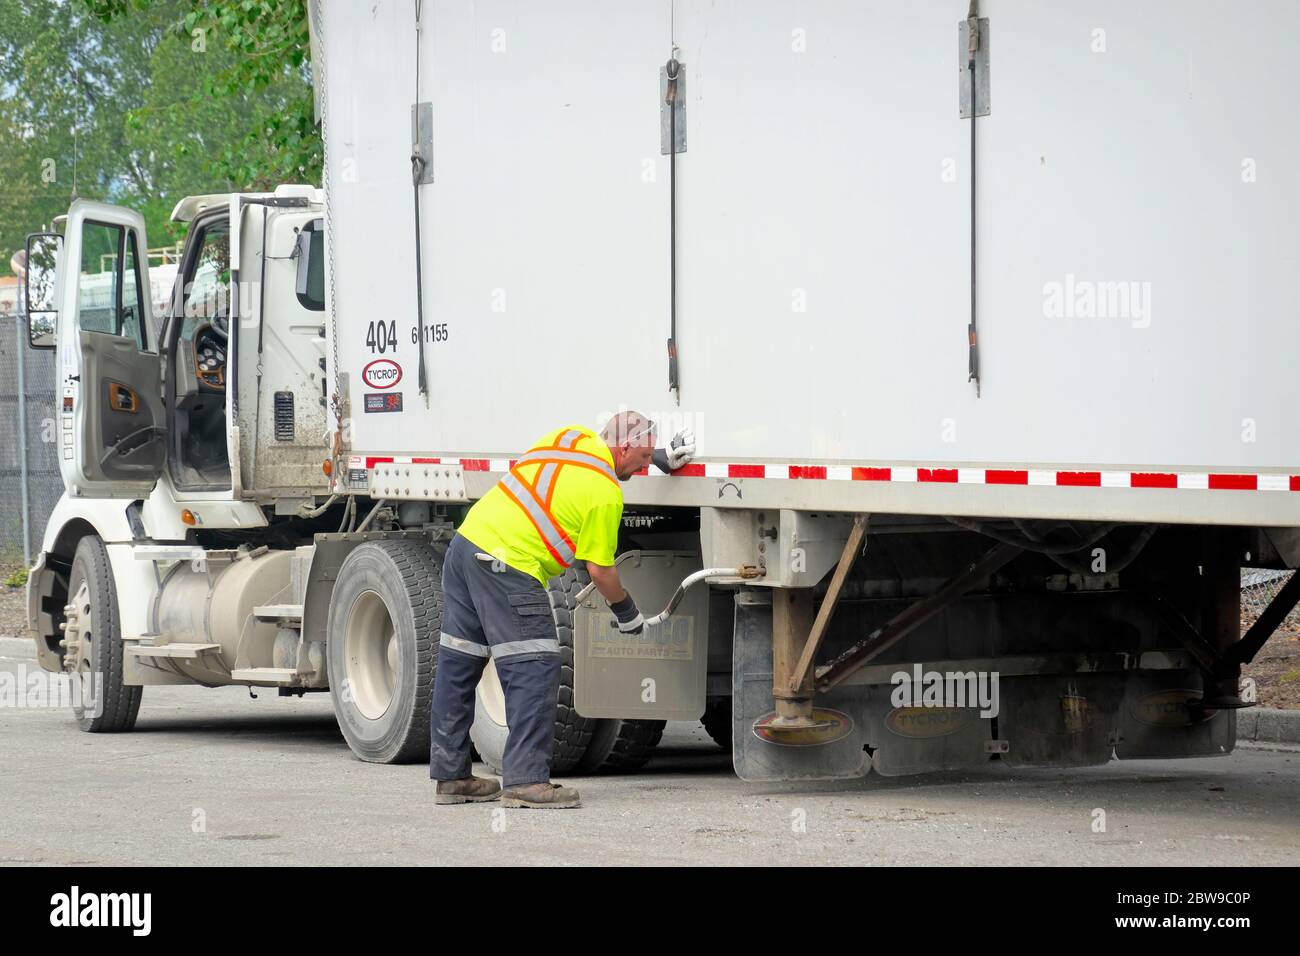 Ein LKW-Fahrer mit Sicherheitsweste und Arbeitshandschuhen nimmt Anpassungen an einem weißen Sattelschlepper vor. Stock Foto. Stockfoto